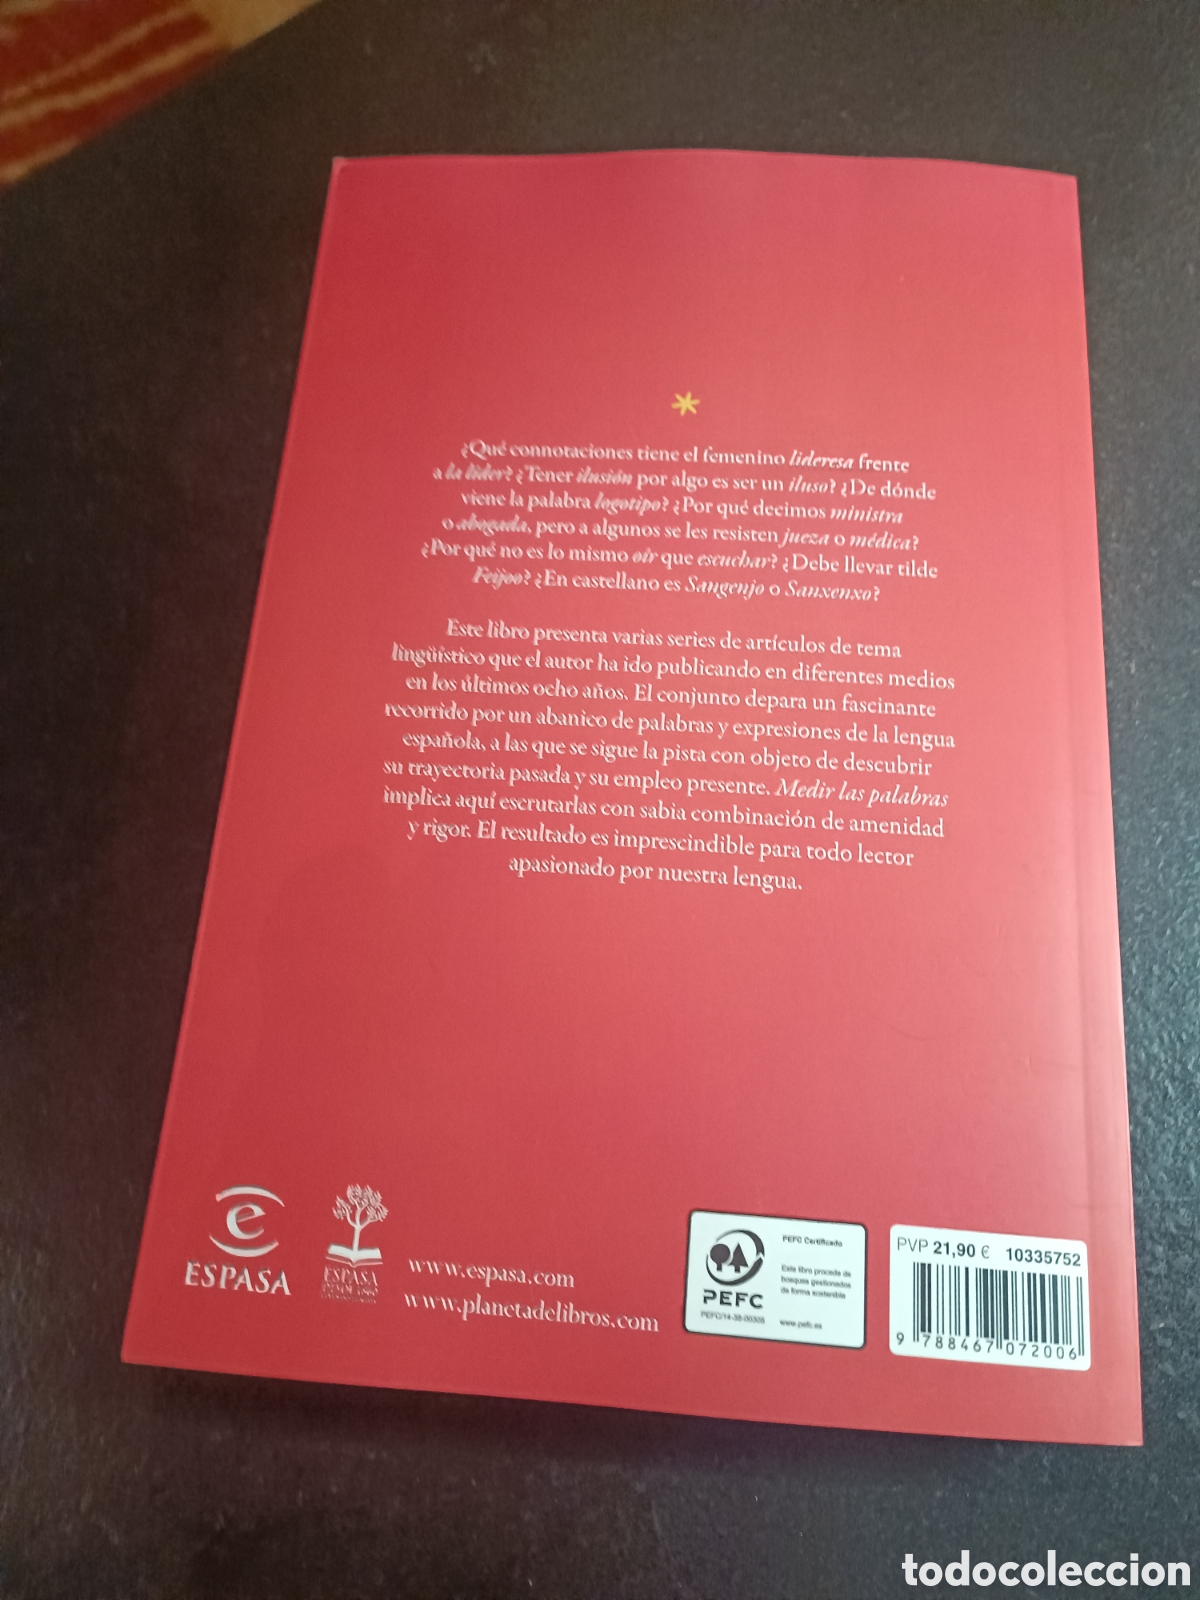 Libro: Medir Las Palabras. Alvarez De Miranda, Pedro. Espasa